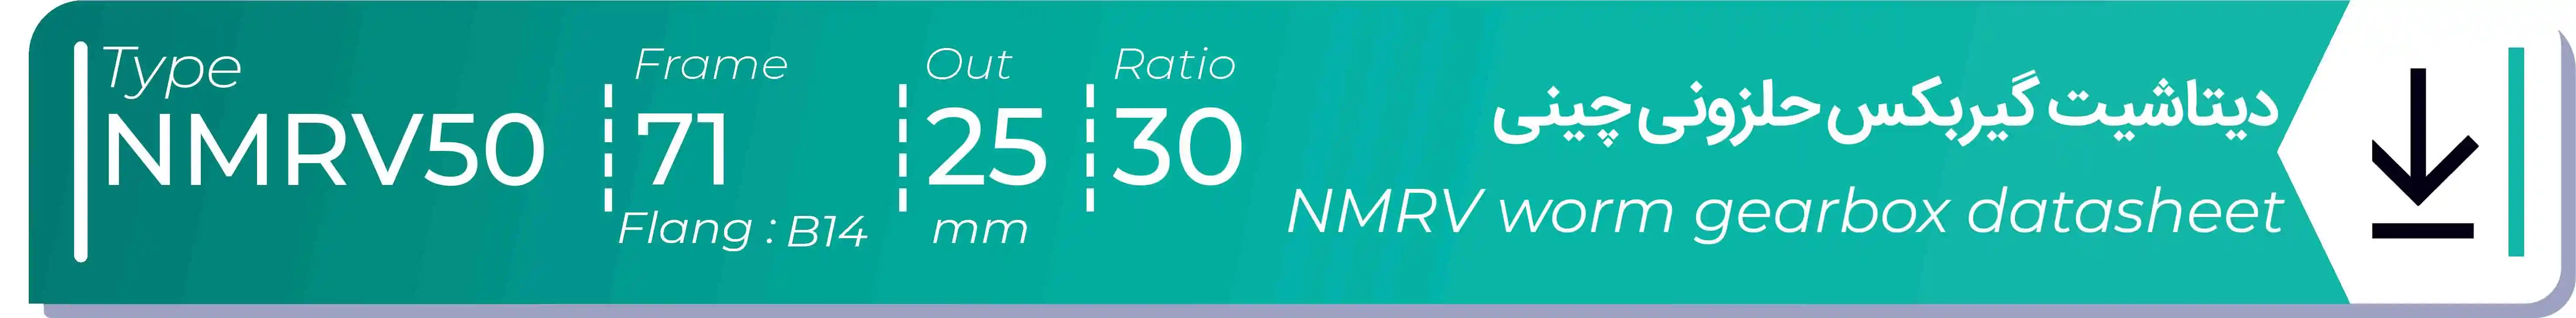  دیتاشیت و مشخصات فنی گیربکس حلزونی چینی   NMRV50  -  با خروجی 25- میلی متر و نسبت30 و فریم 71